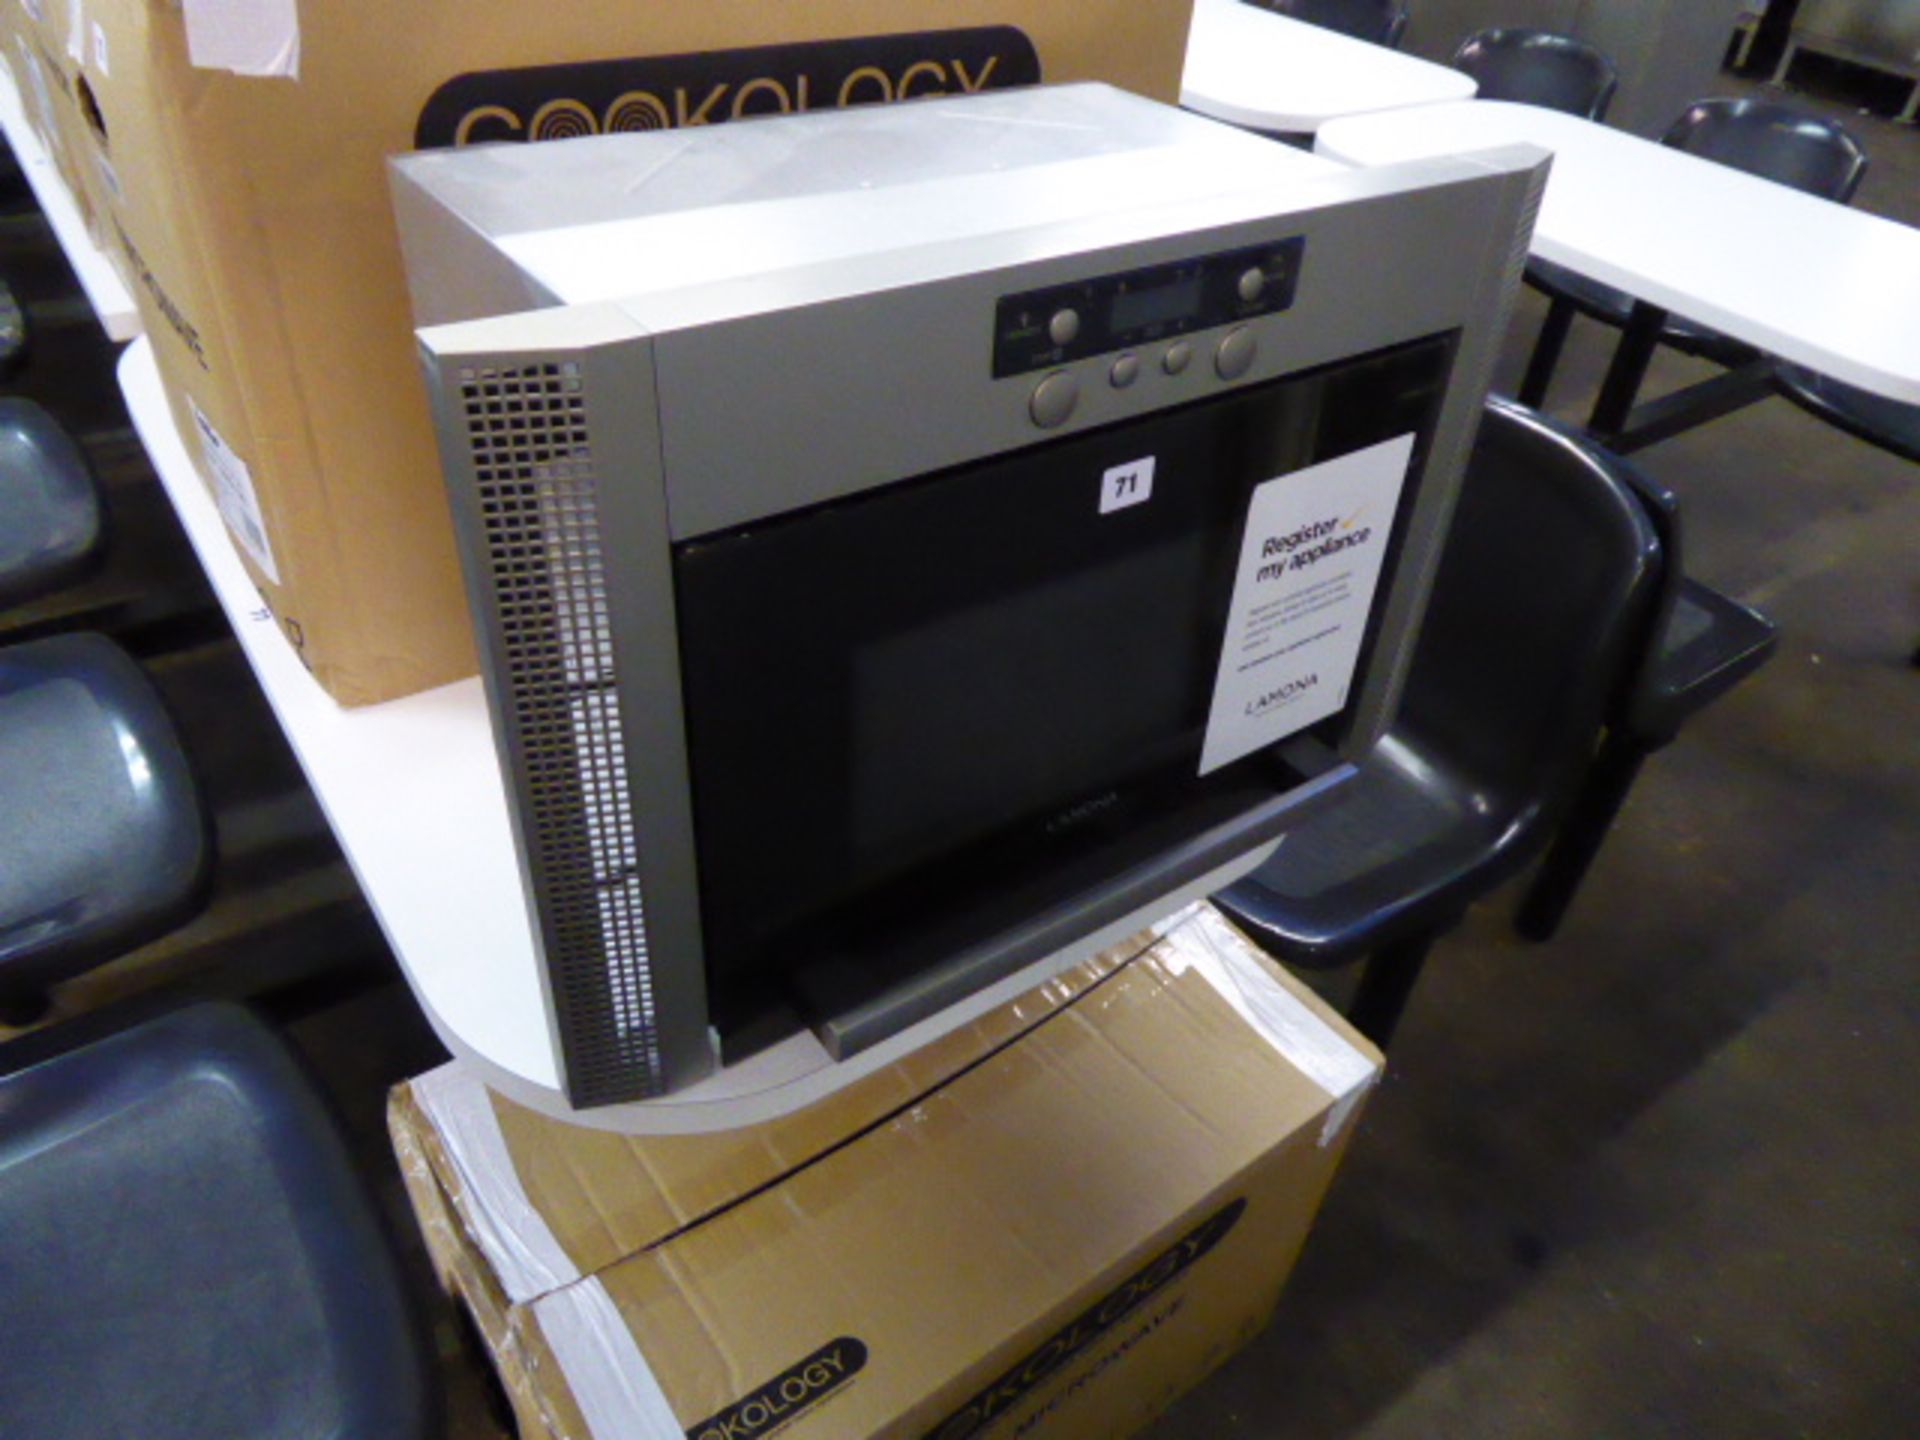 60cm Lamona Model HJA7030 built in microwave oven